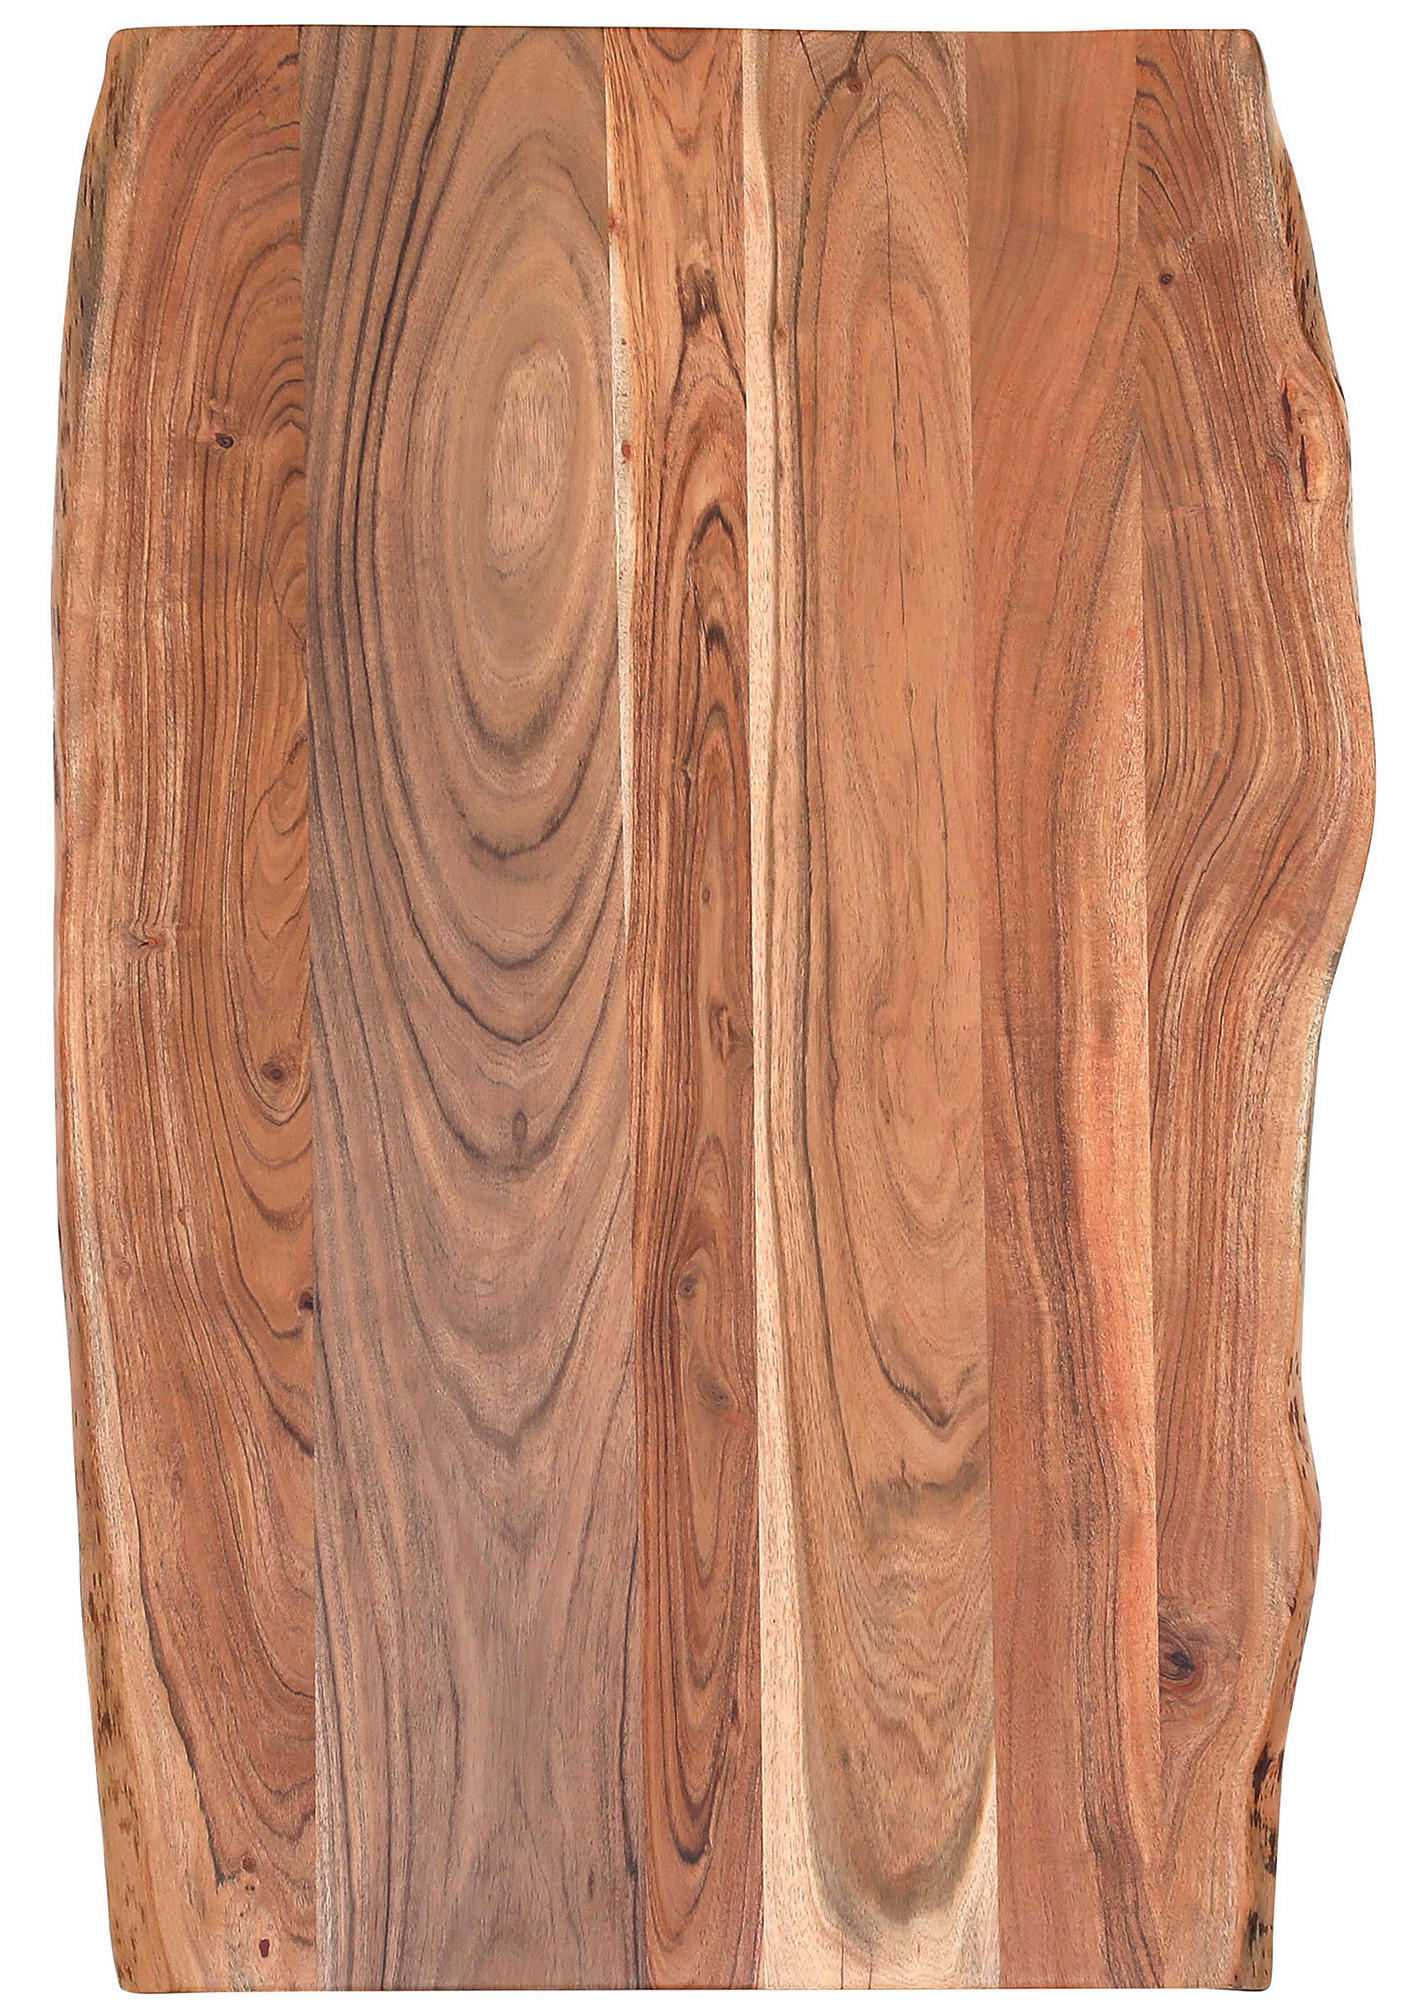 ESSTISCH 160/90/76 cm Akazie massiv Holz Weiß, Akaziefarben rechteckig  - Weiß/Akaziefarben, Design, Holz/Metall (160/90/76cm) - Landscape